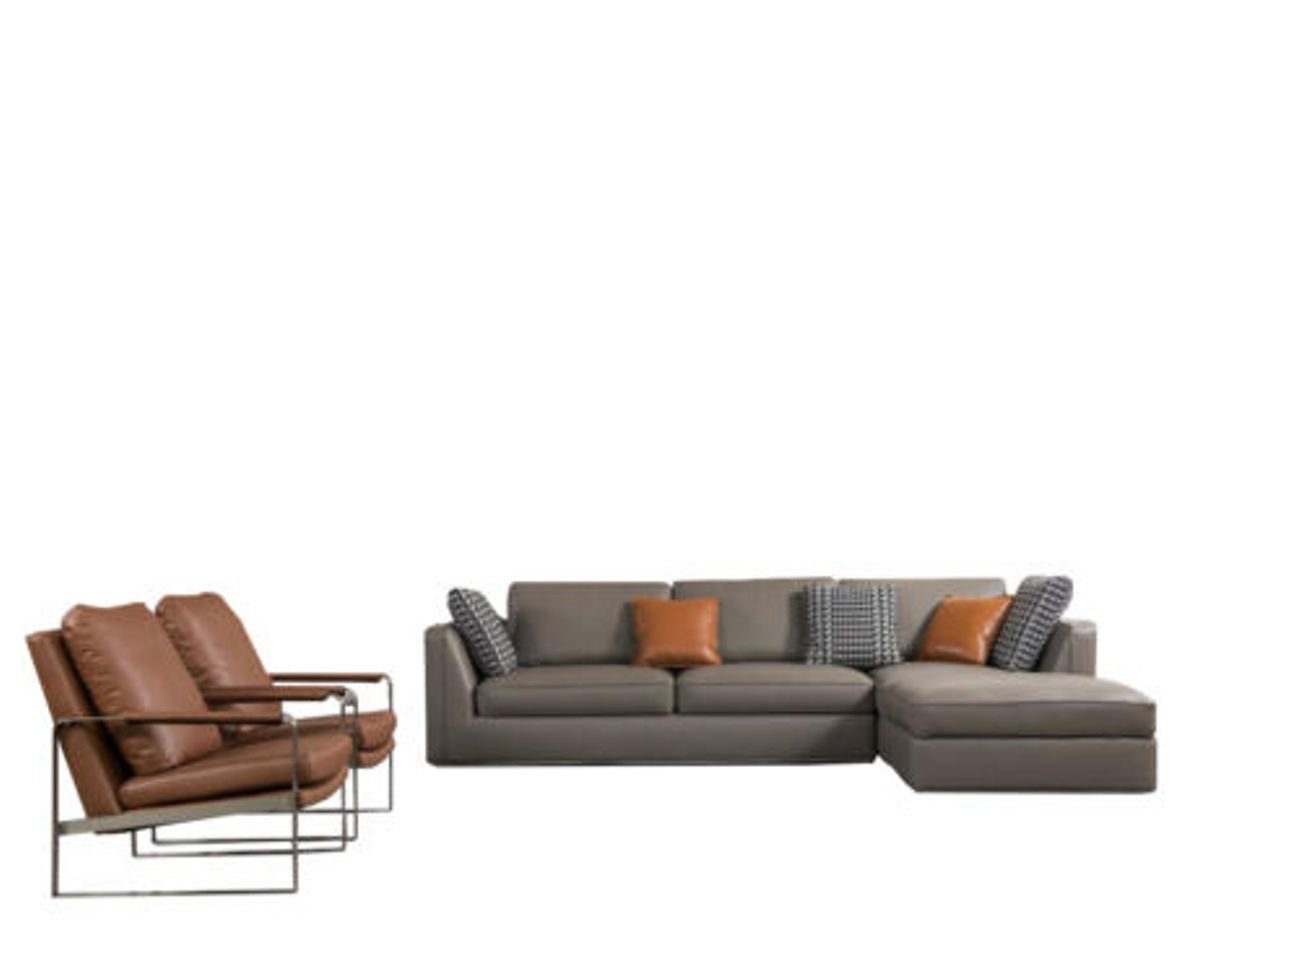 JVmoebel Wohnzimmer-Set, Eck Design Sofa Italienische Möbel Sitz Polster Garnitur Leder Couch